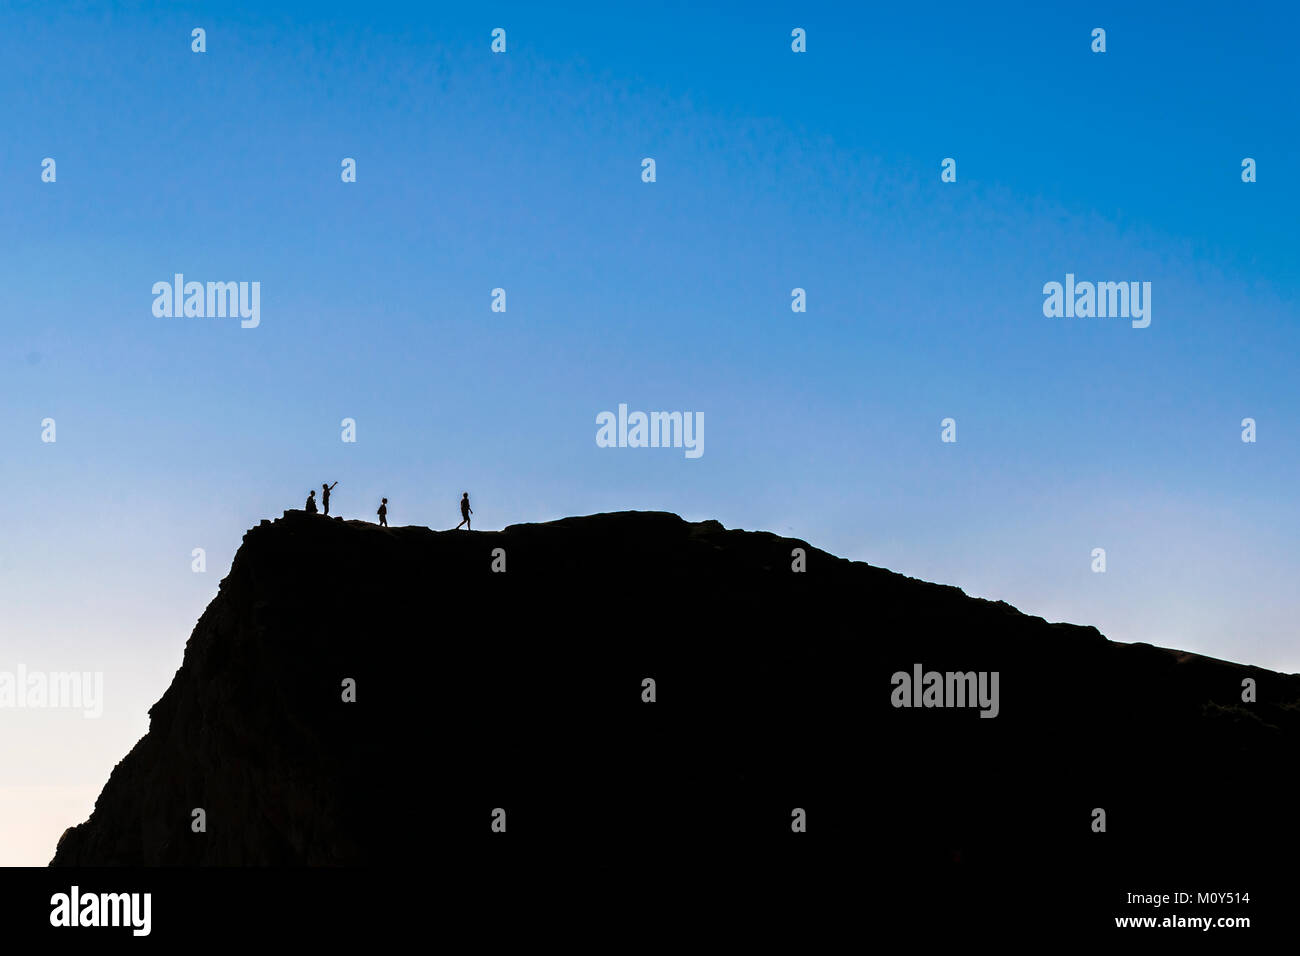 Silhouette contraste élevé scène paysage dépeignant des personnes en haut de la montagne à l'île de Chiloé, Chili Banque D'Images